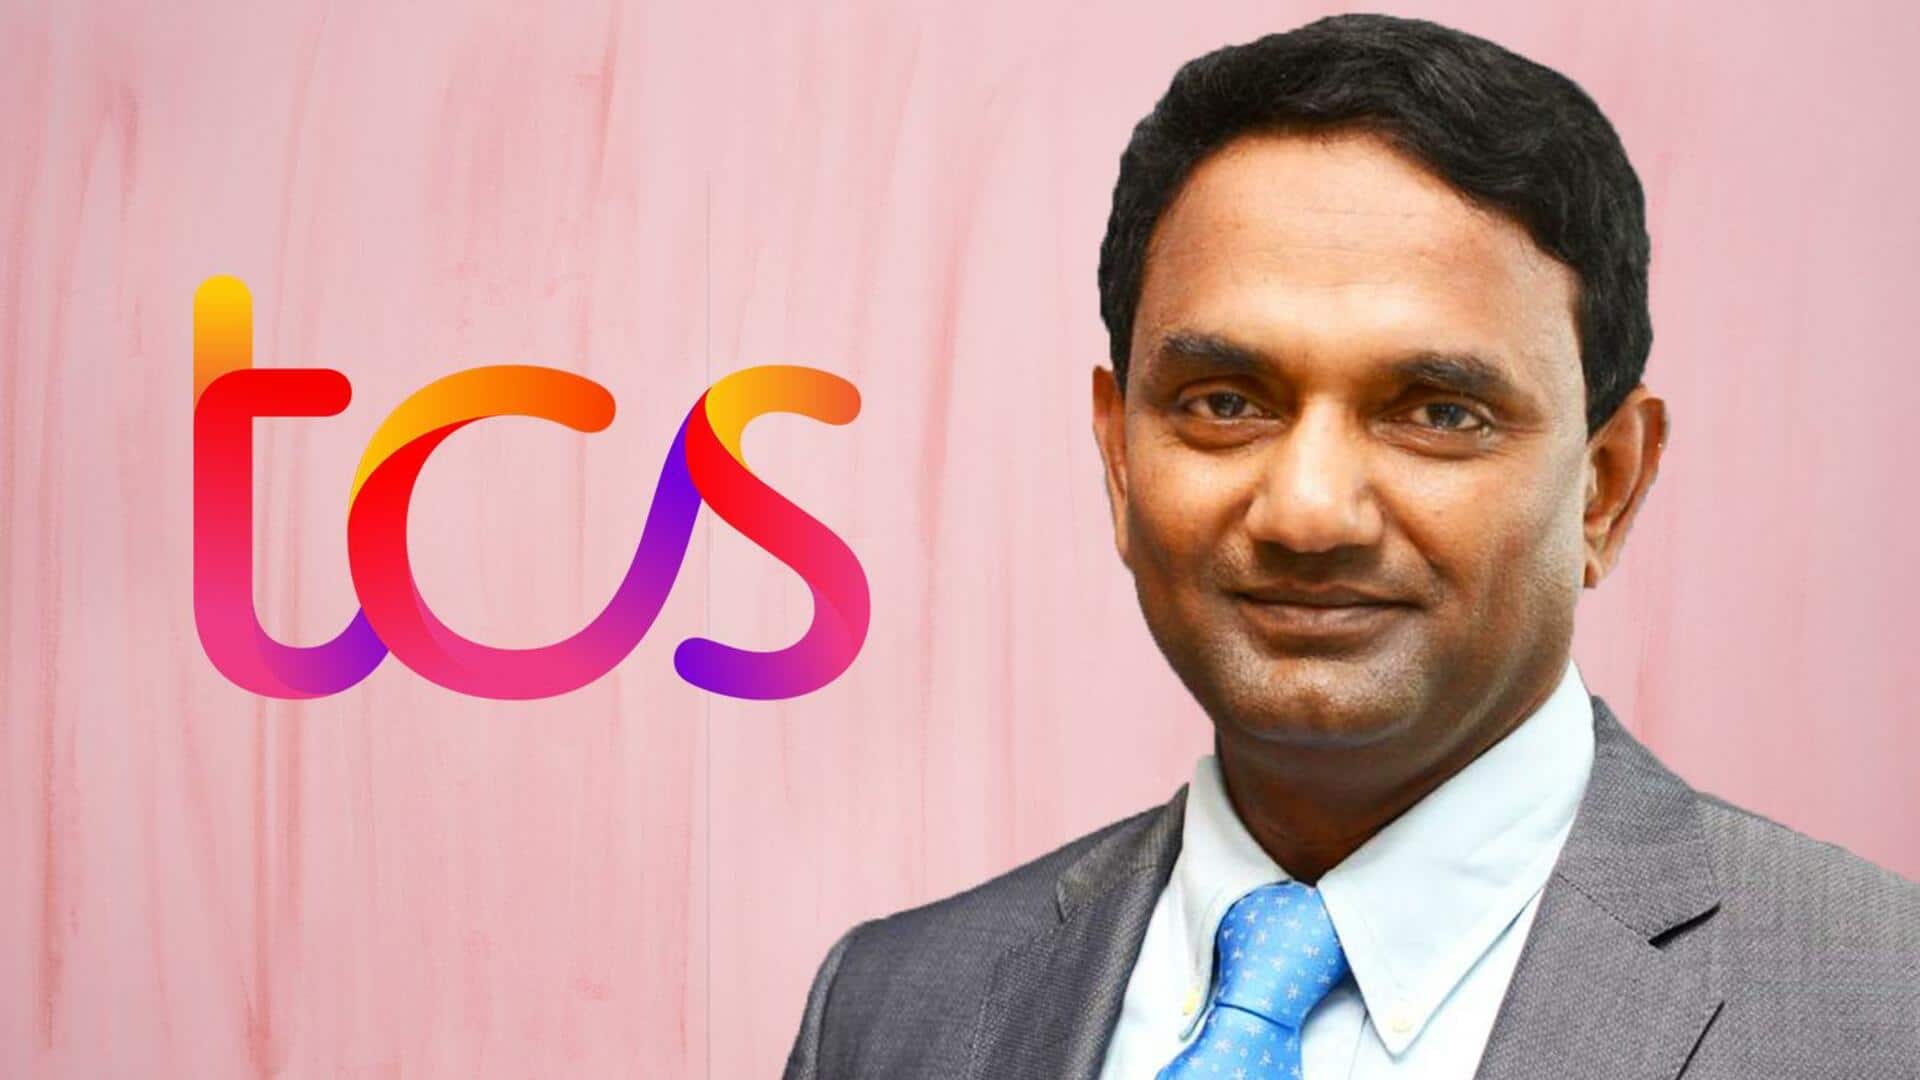 के कृतिवासन बने TCS के नये CEO, जानिए उन्होंने कहां से की पढ़ाई